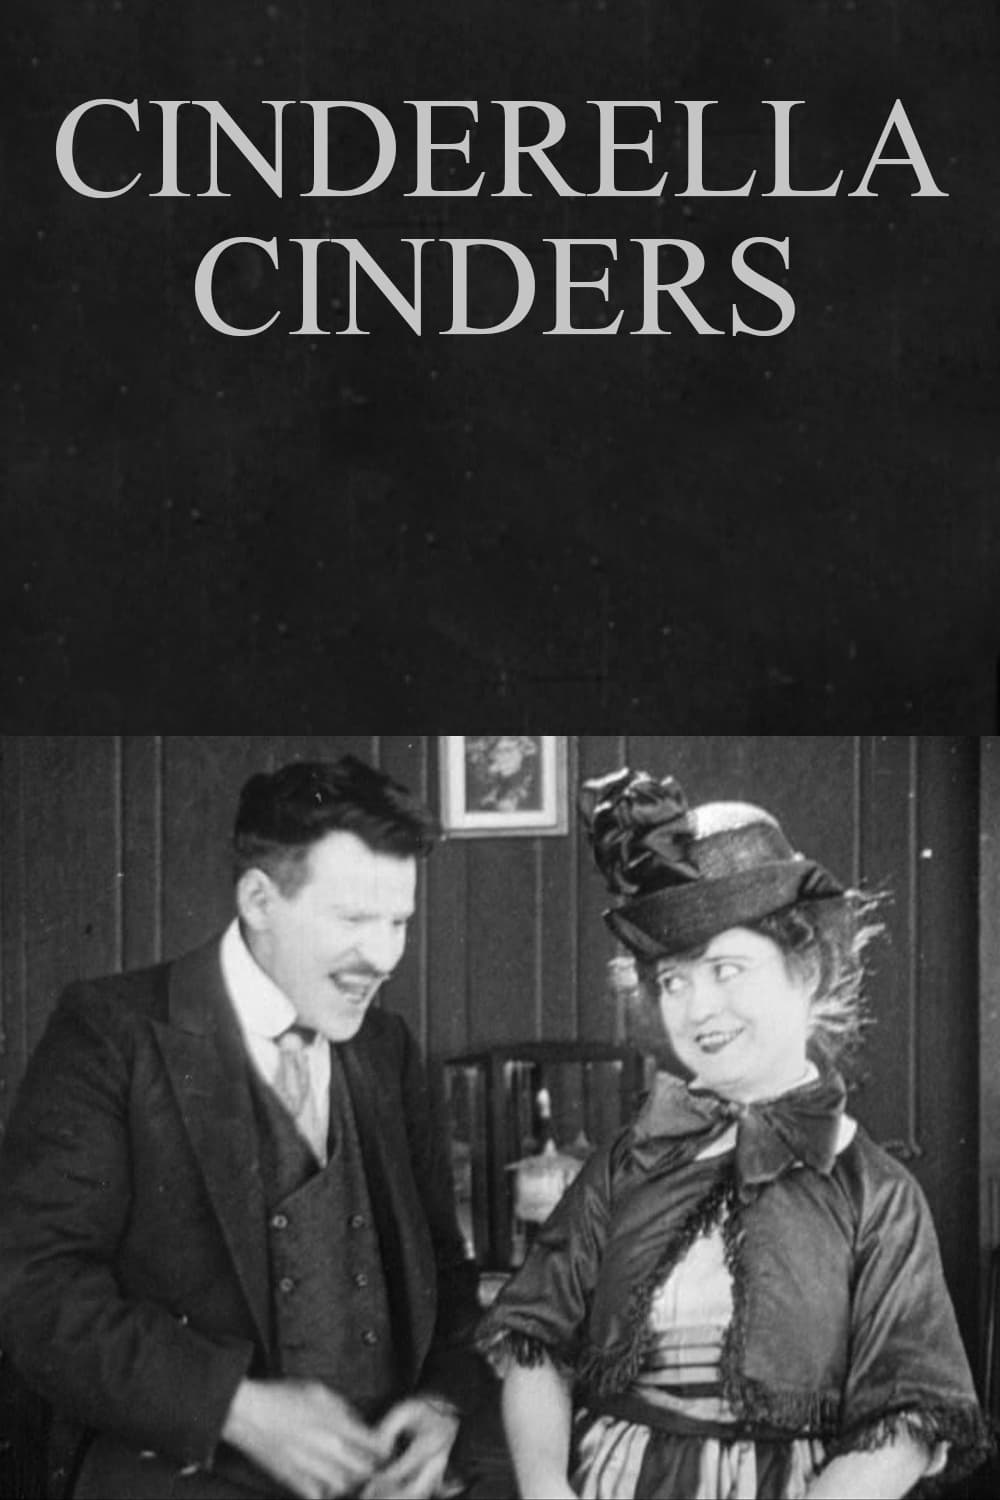 Cinderella Cinders